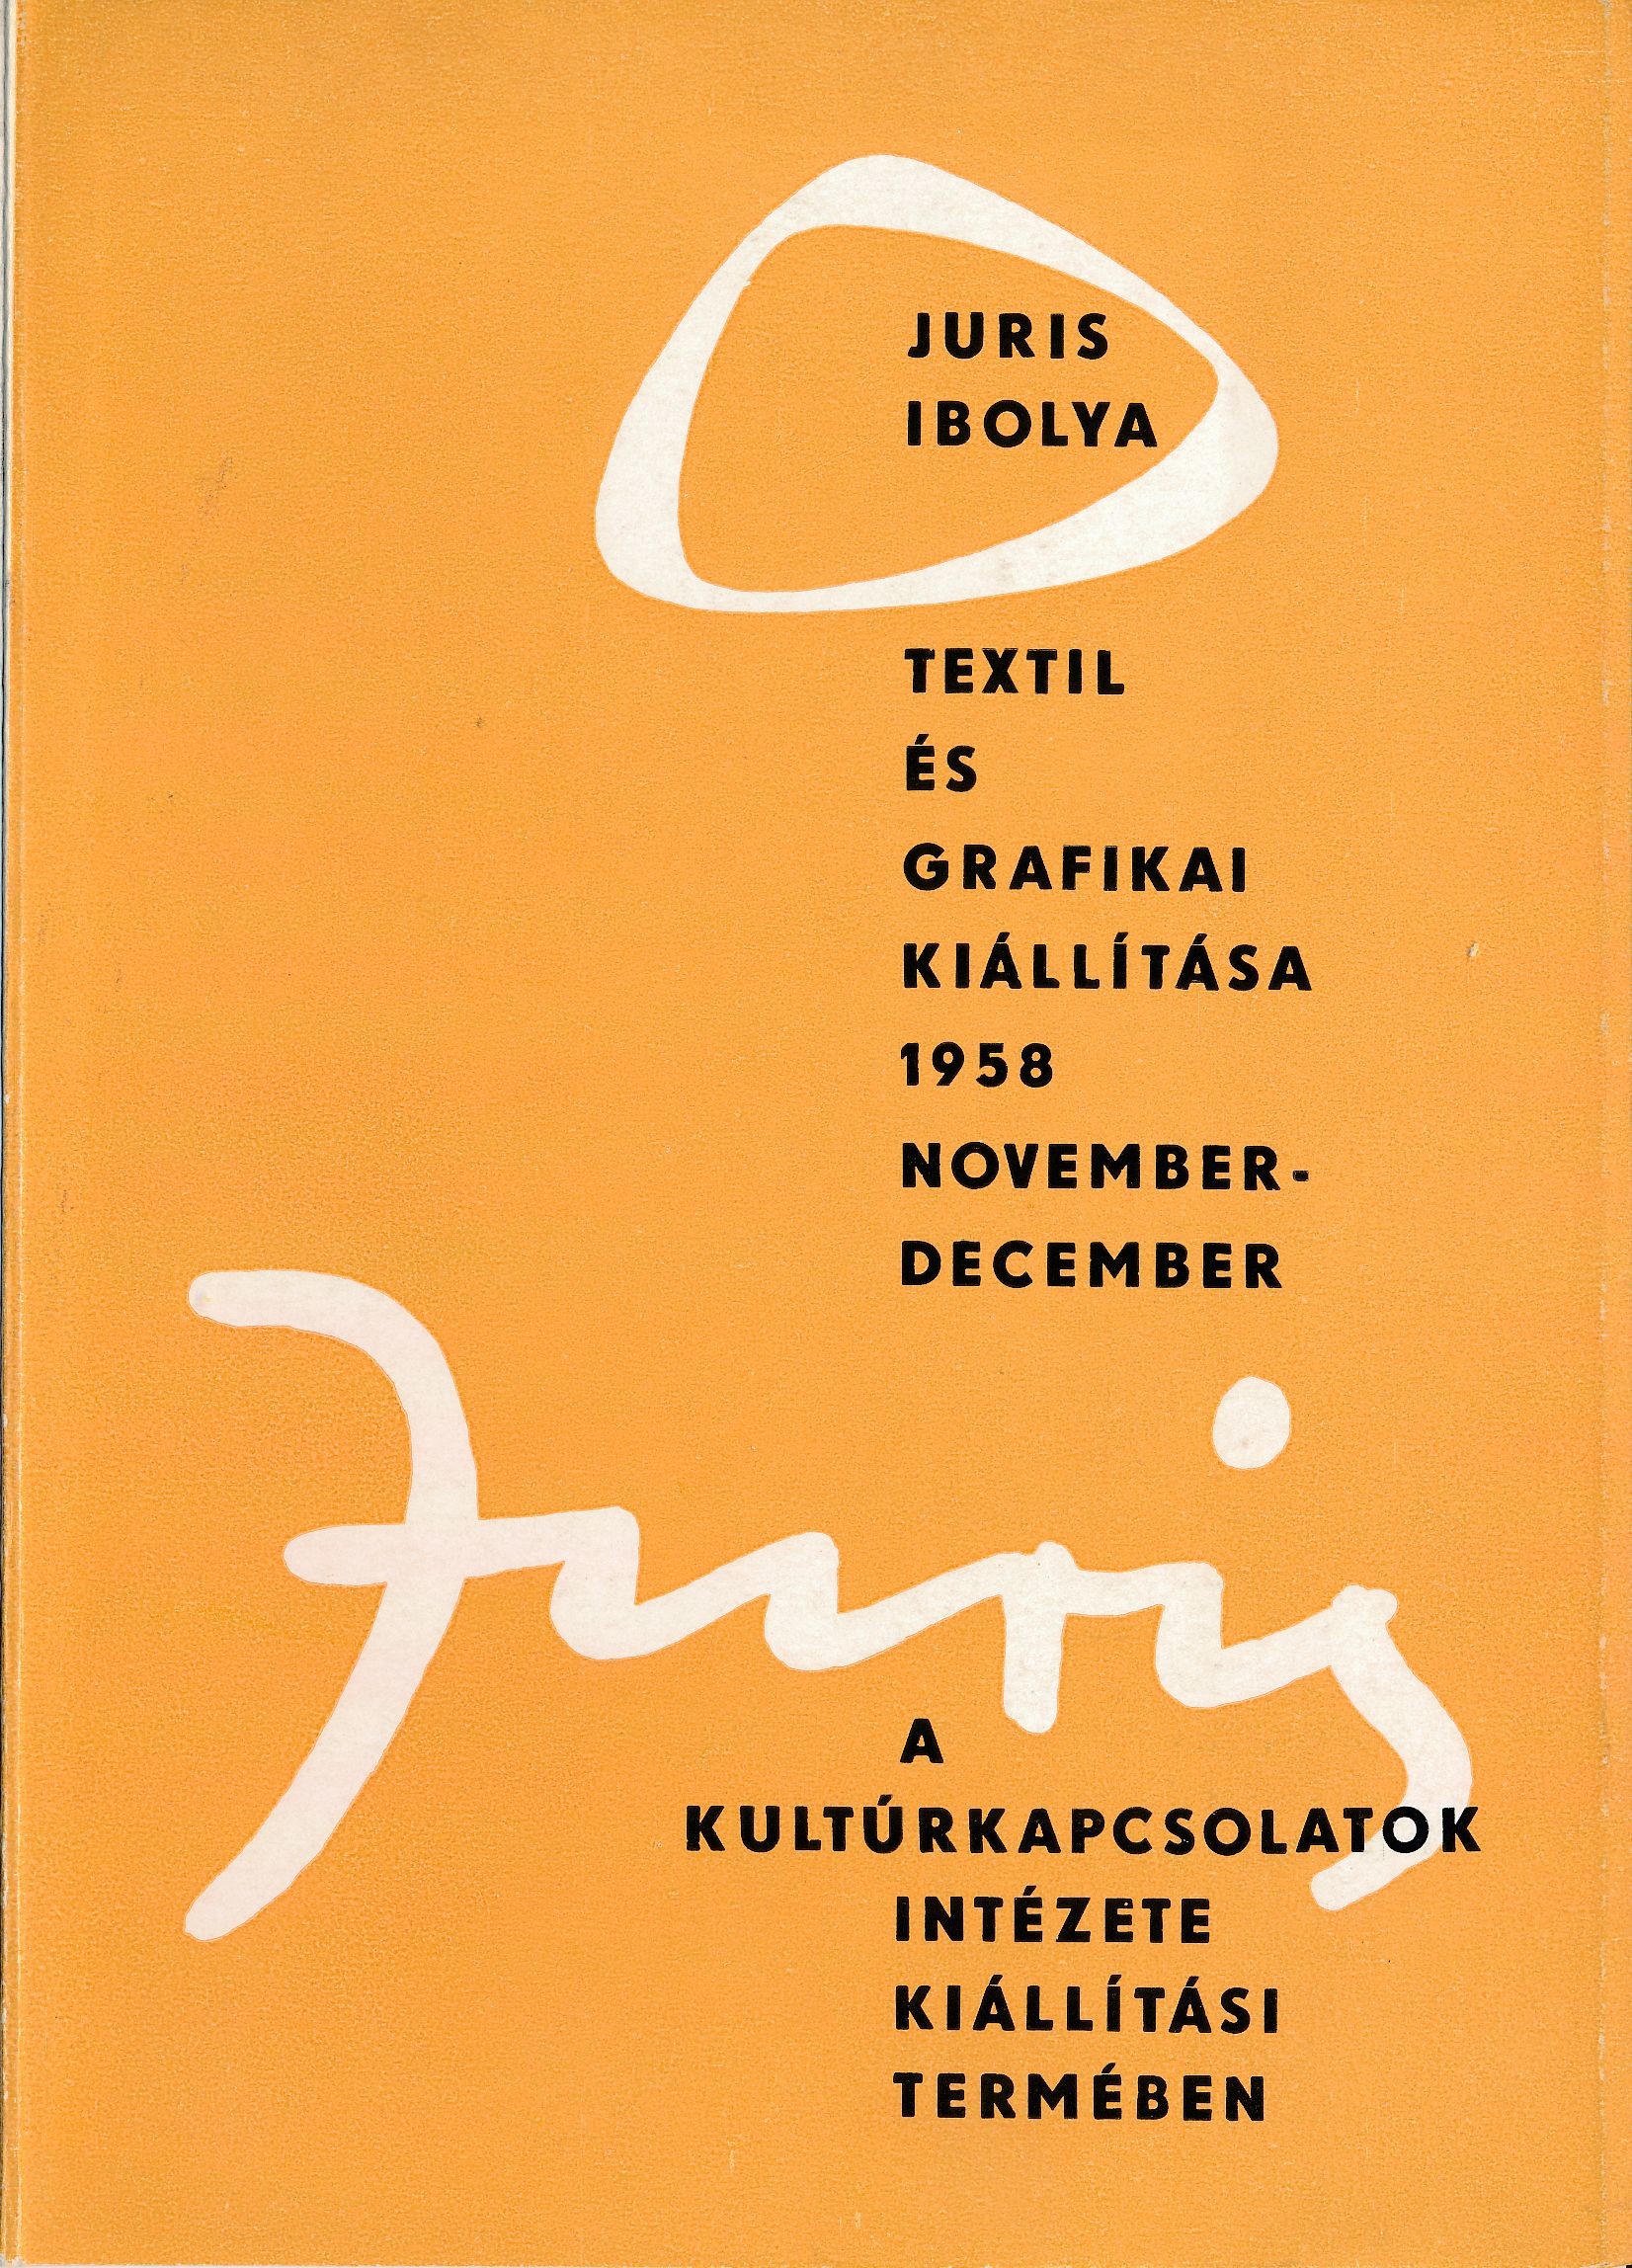 Juris Ibolya kiállítás (Design DigiTár – Iparművészeti archívum CC BY-NC-SA)